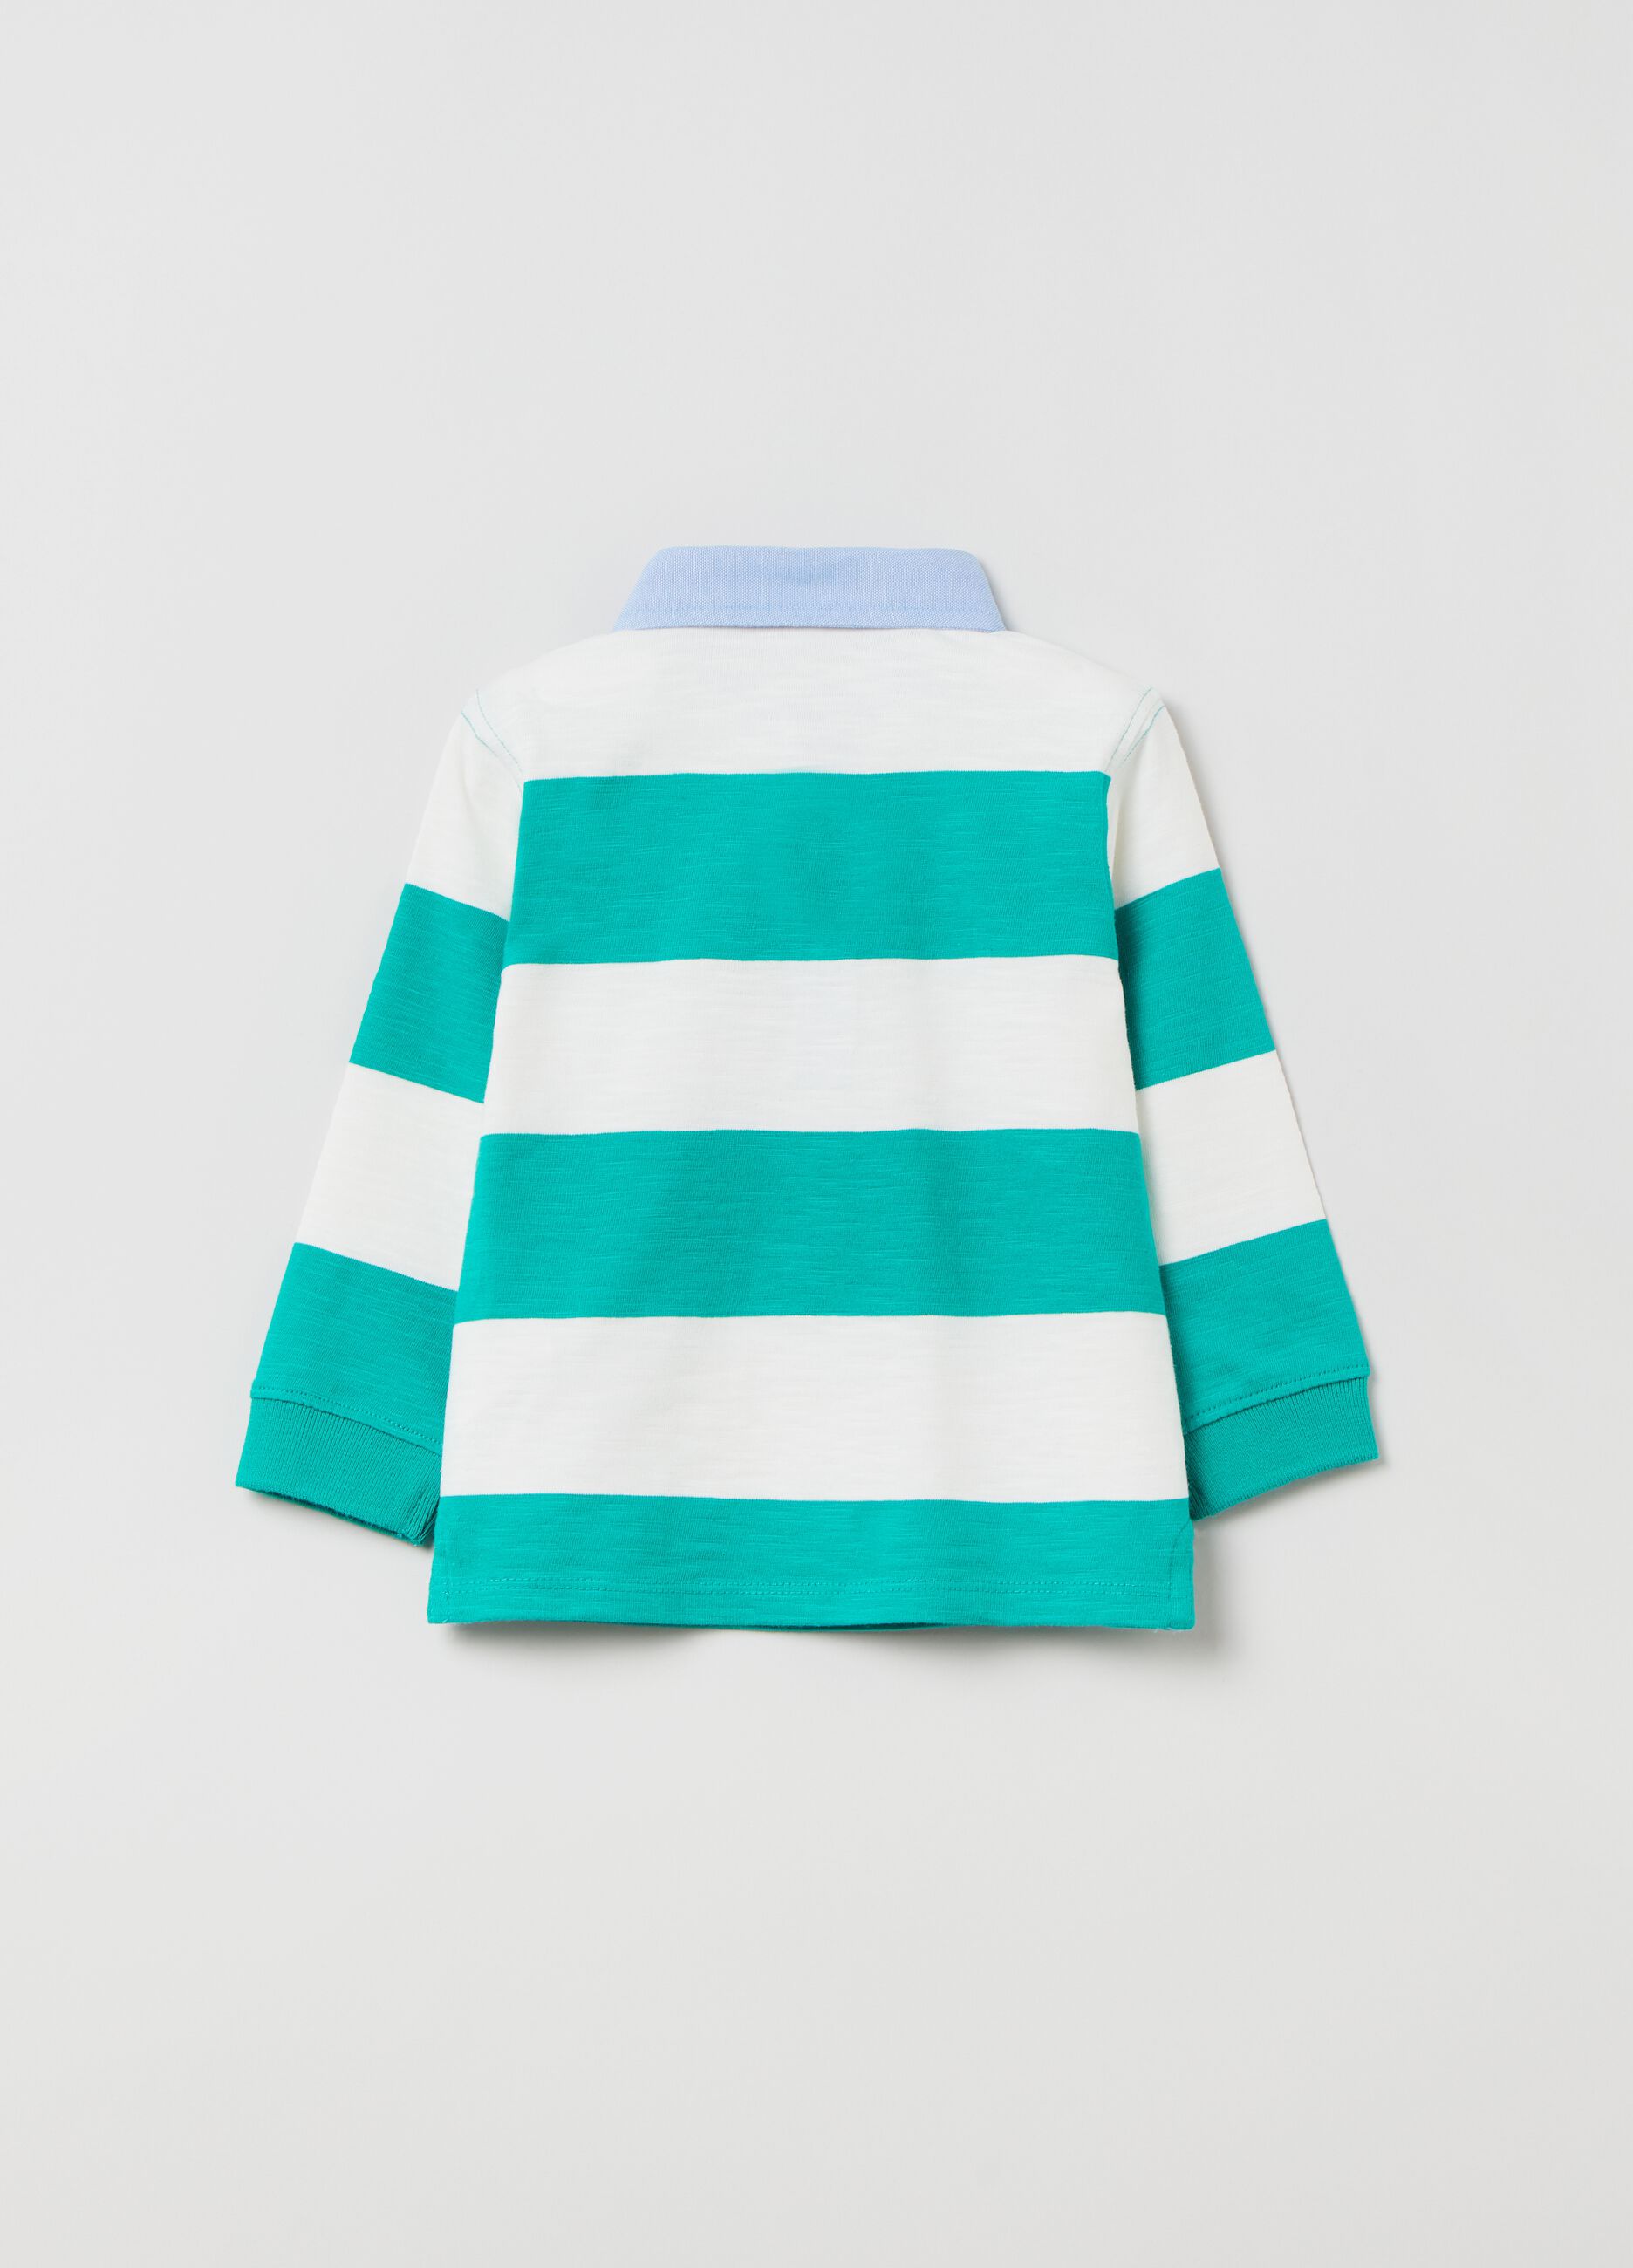 Striped cotton polo shirt with piquet collar